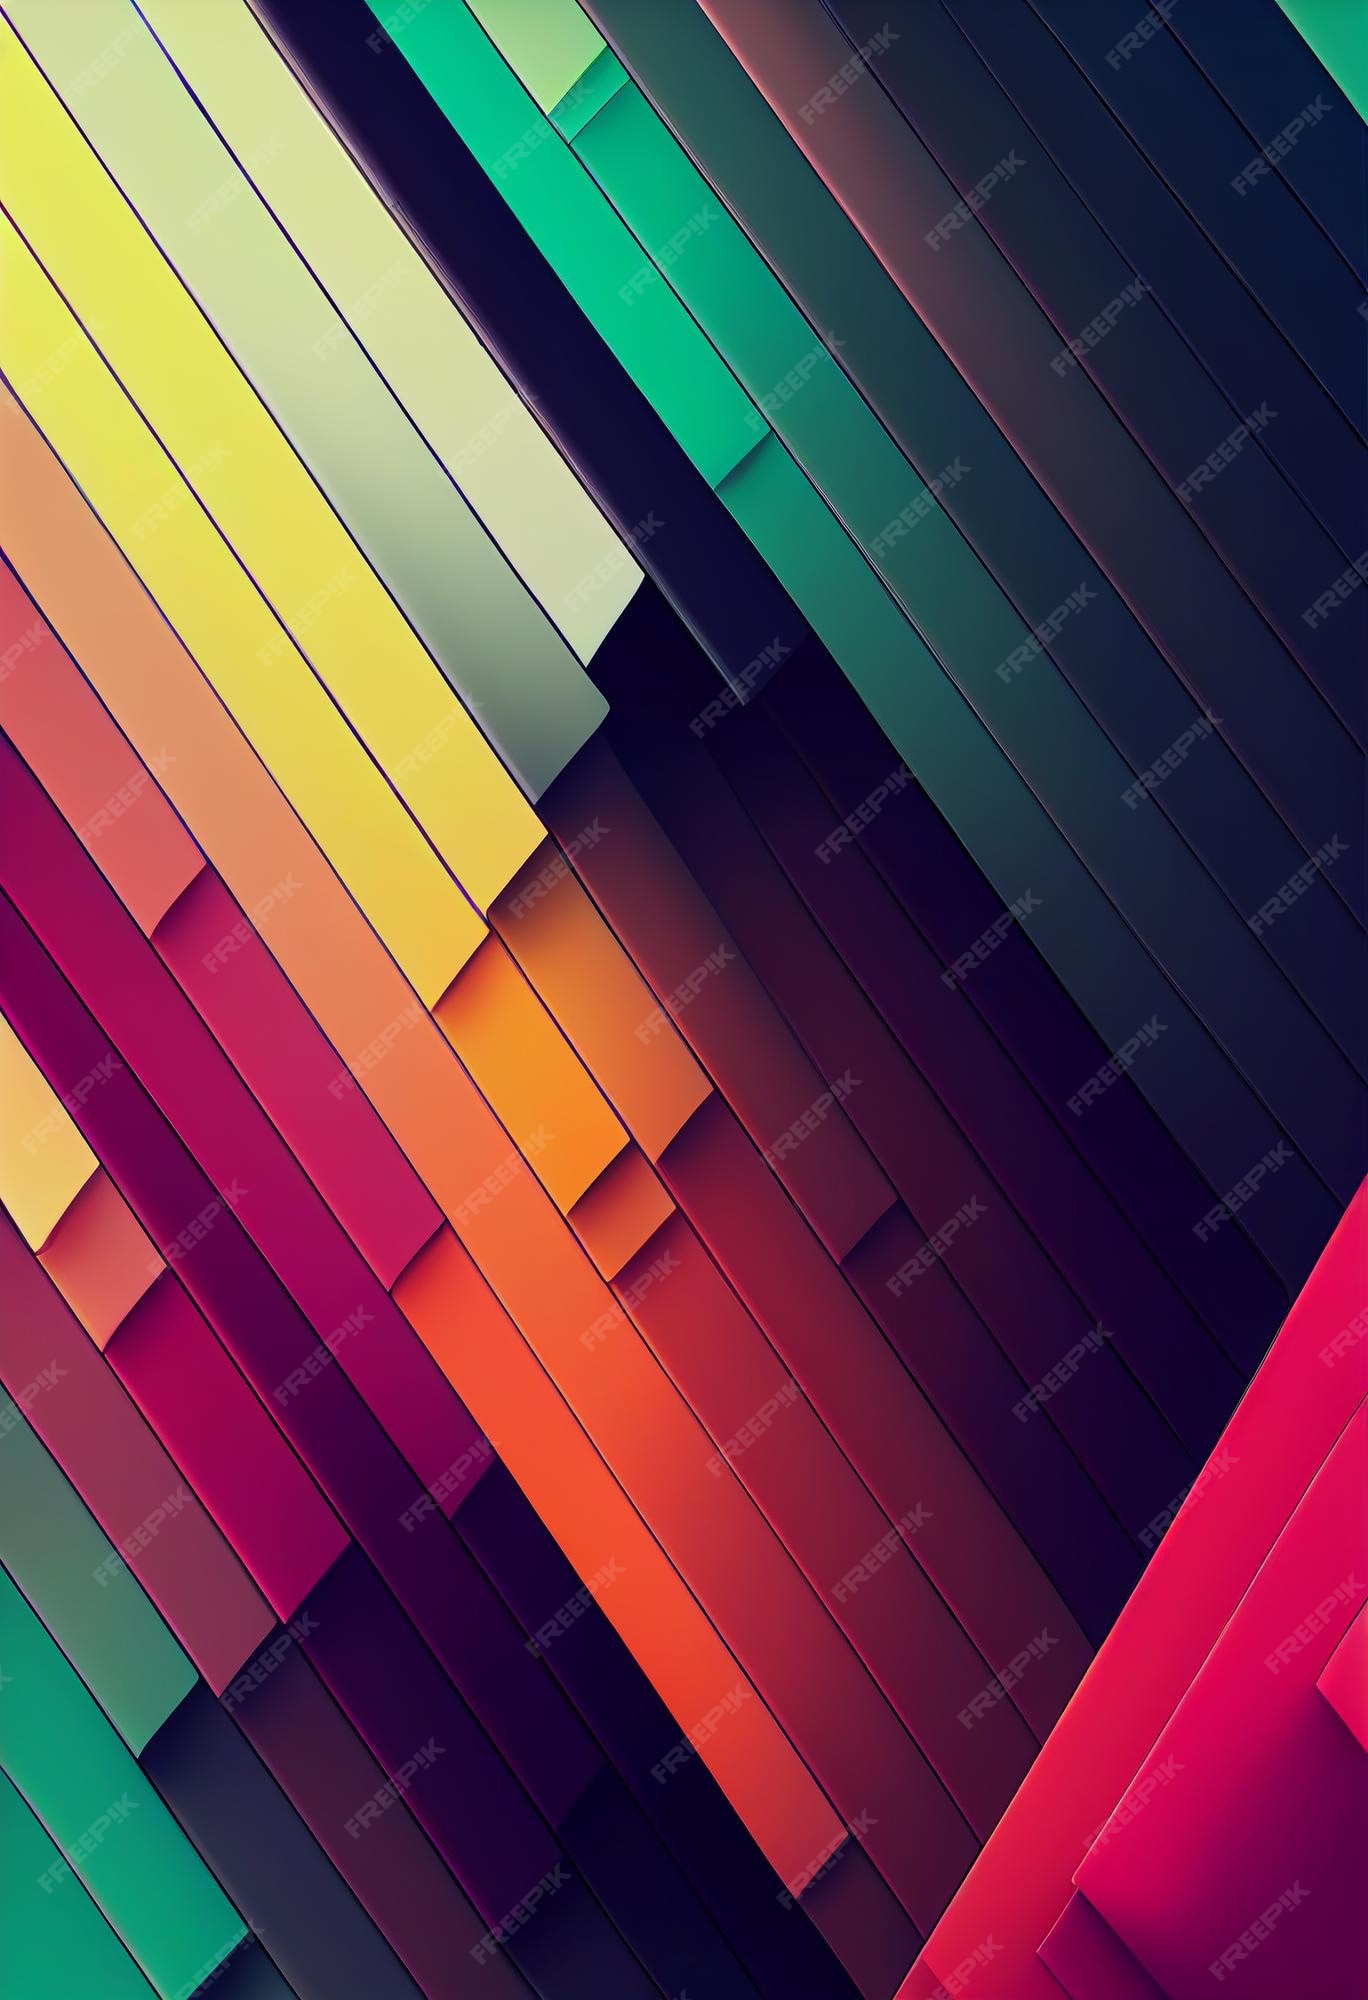 Hình nền Colorful Abstract Wallpaper sẽ mang đến cho bạn sự vui tươi và tràn đầy năng lượng. Với những họa tiết độc đáo và sắc màu tươi sáng, điện thoại của bạn sẽ trở nên độc đáo và thu hút hơn. 